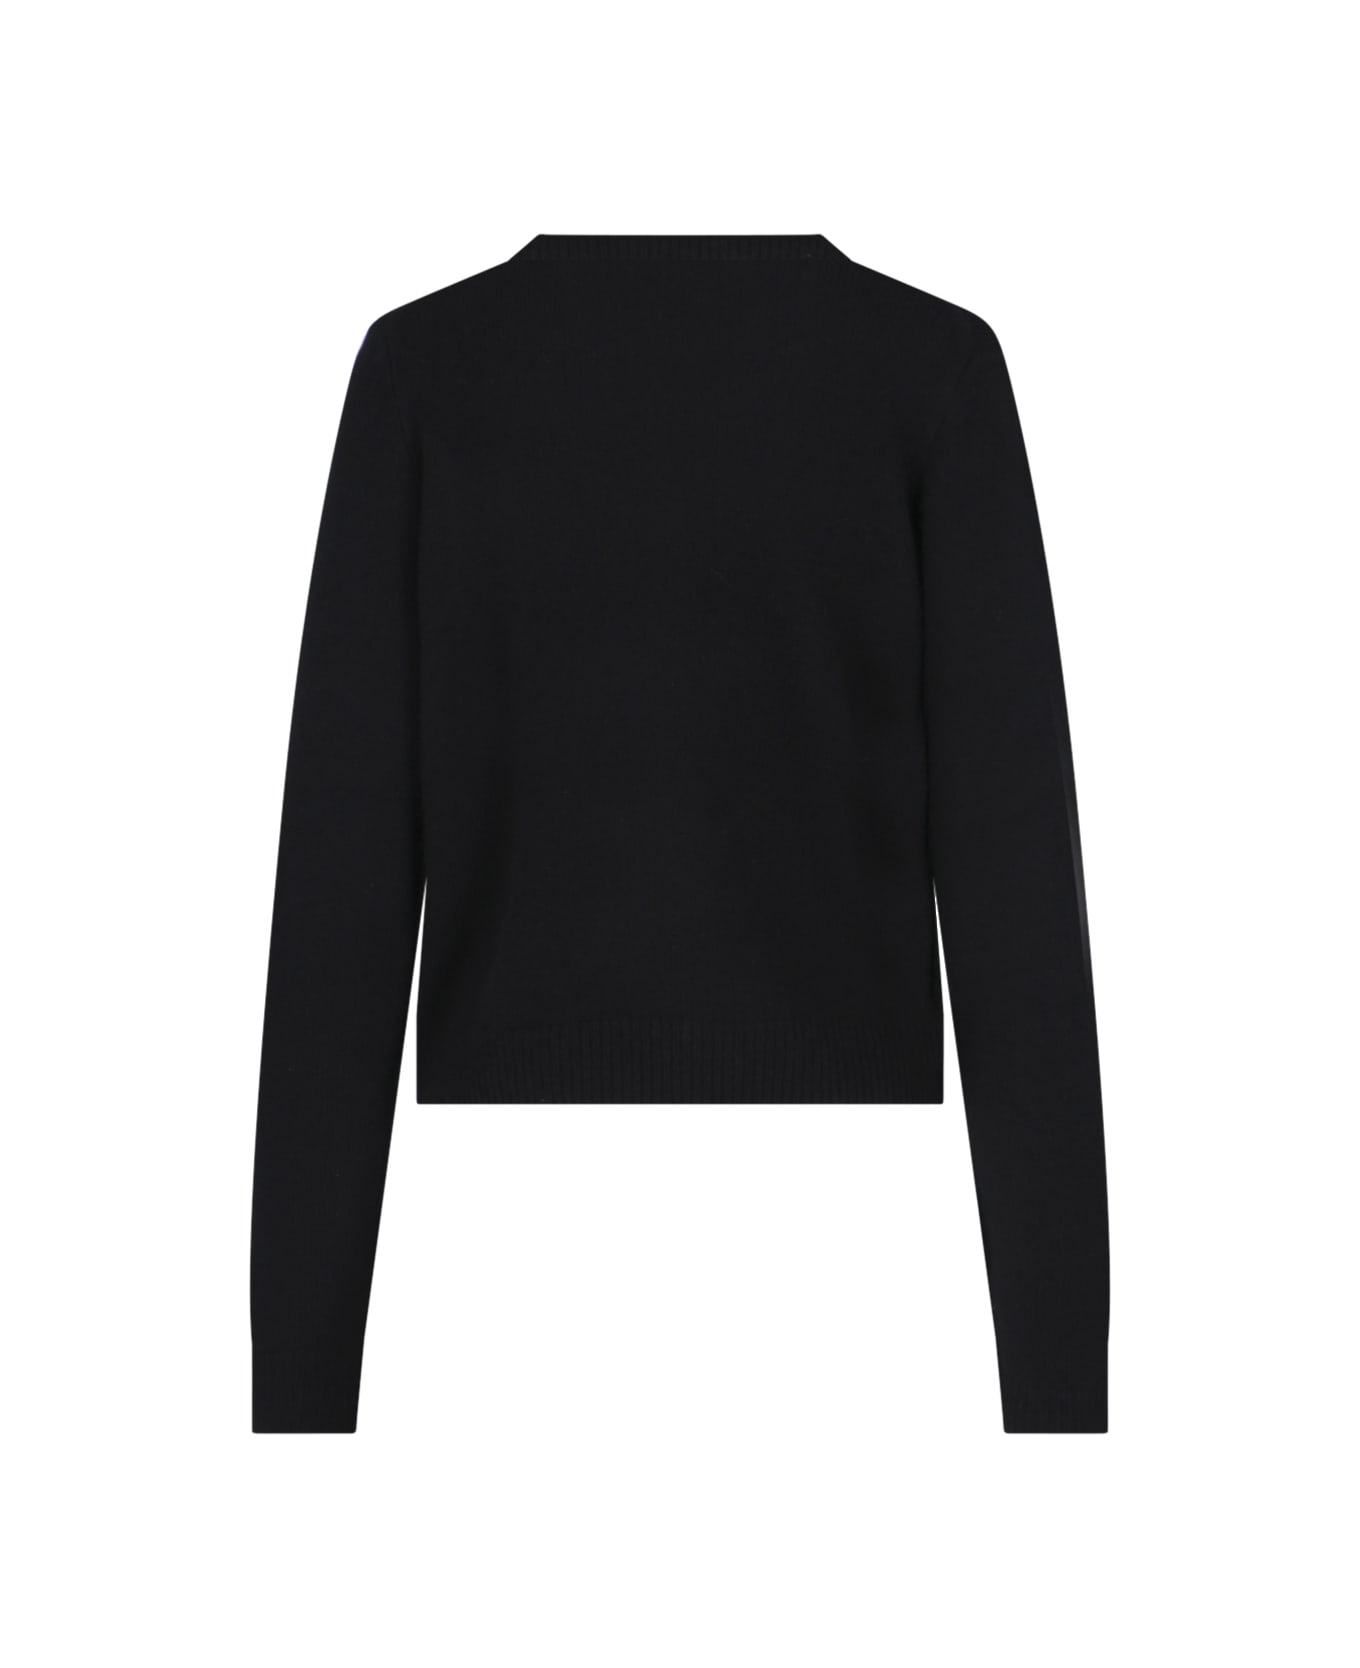 Khaite Cashmere Sweater - Black   ニットウェア